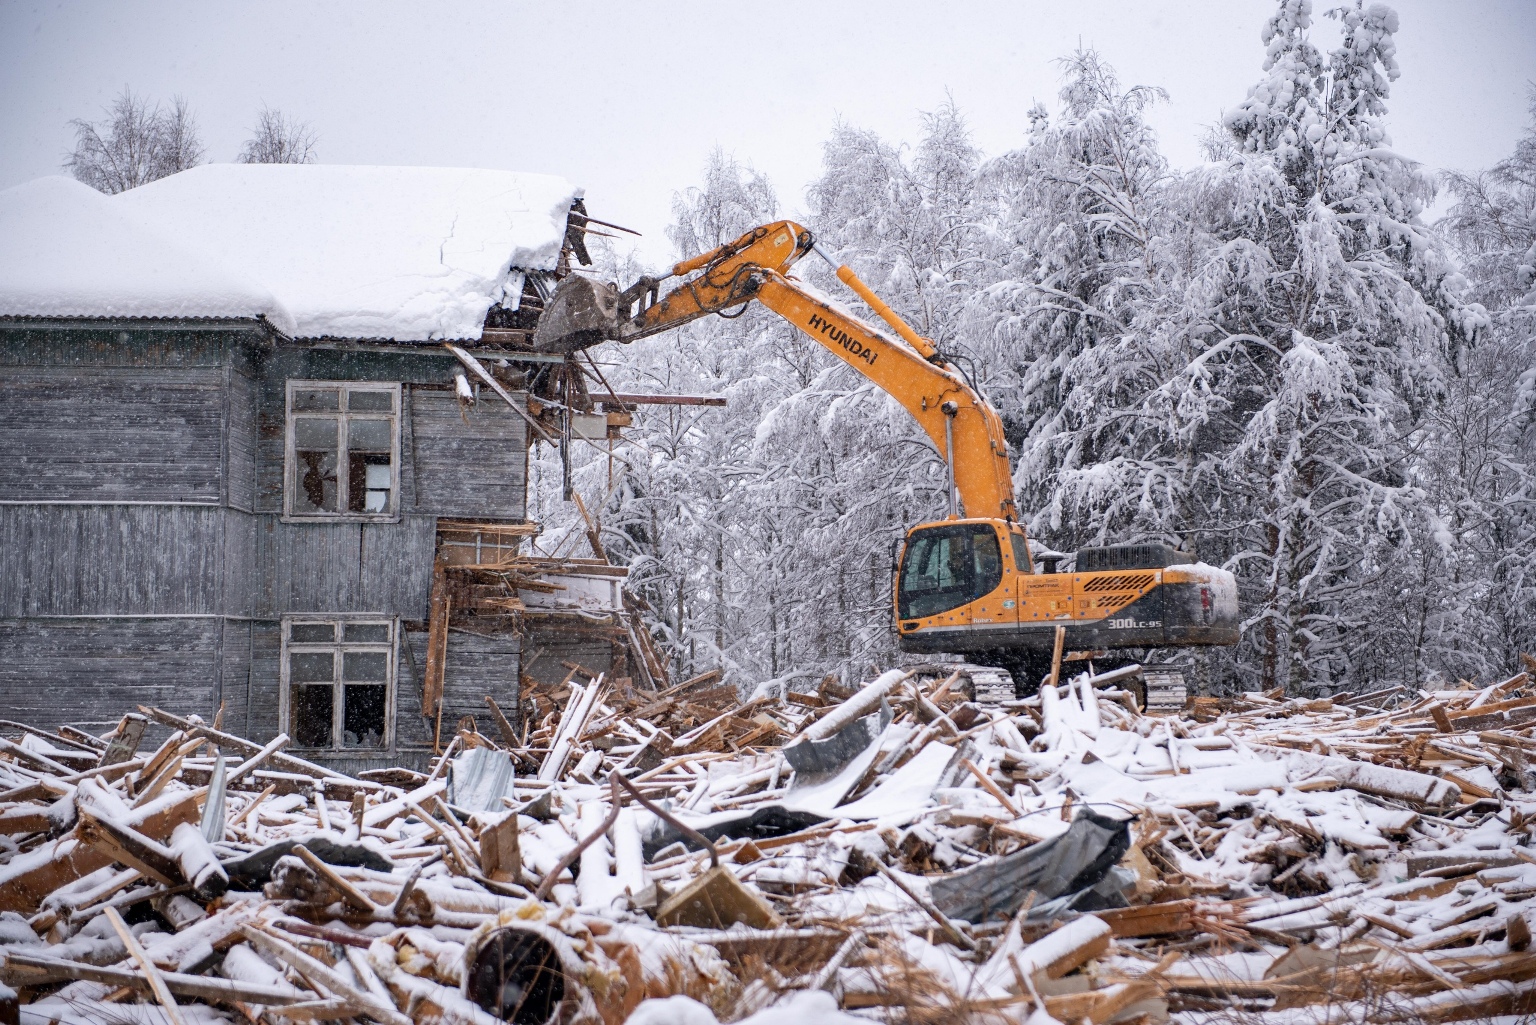 Tyhjillään olevia ränsistyneitä asuintaloja puretaan suunniteltua nopeammin niiden alhaisen turvallisuuden takia. Kuva: Karjalan hallituksen lehdistöpalvelu